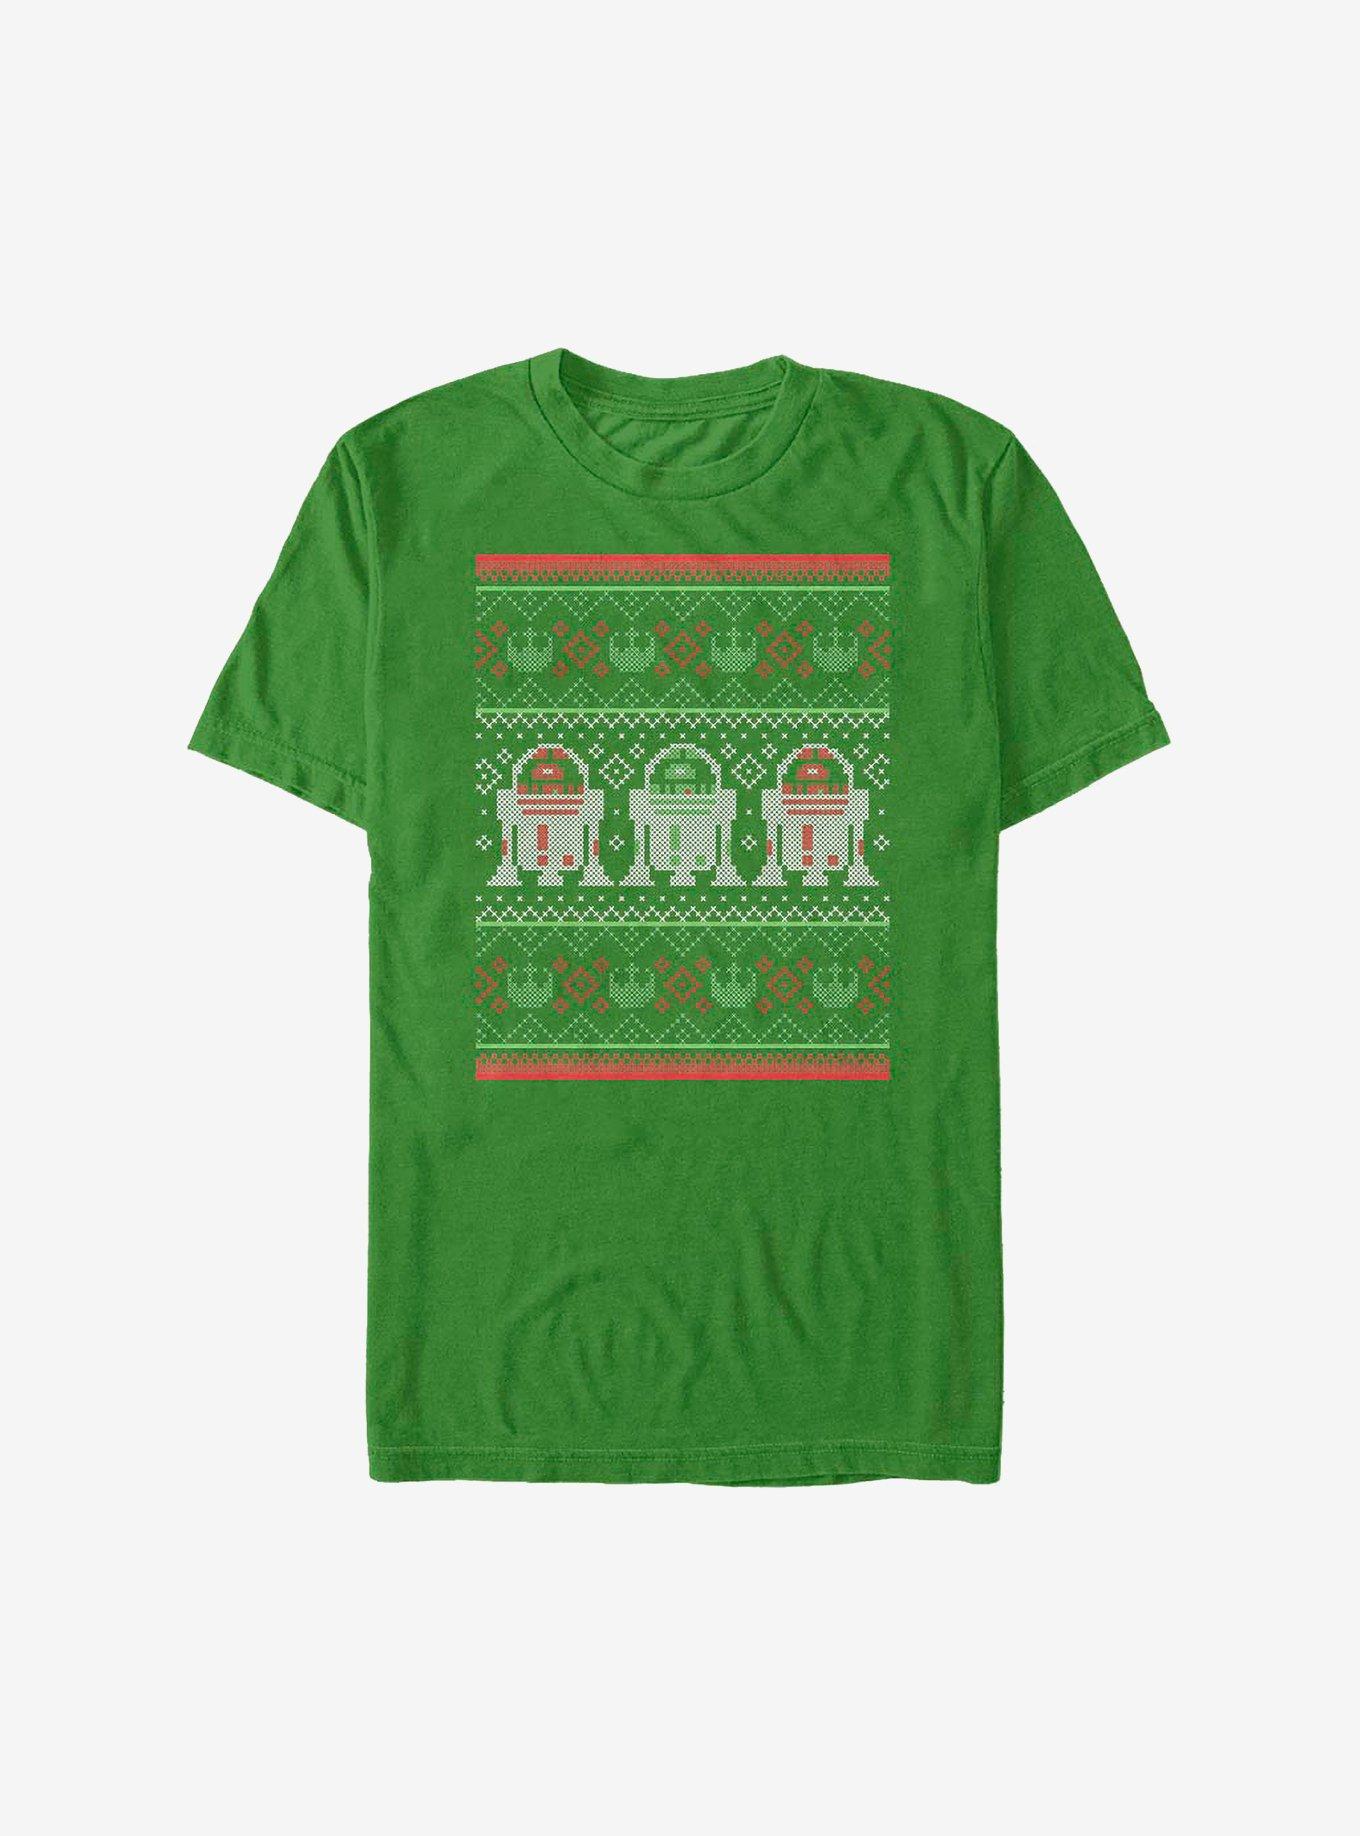 Star Wars Christmas Units T-Shirt, KELLY, hi-res